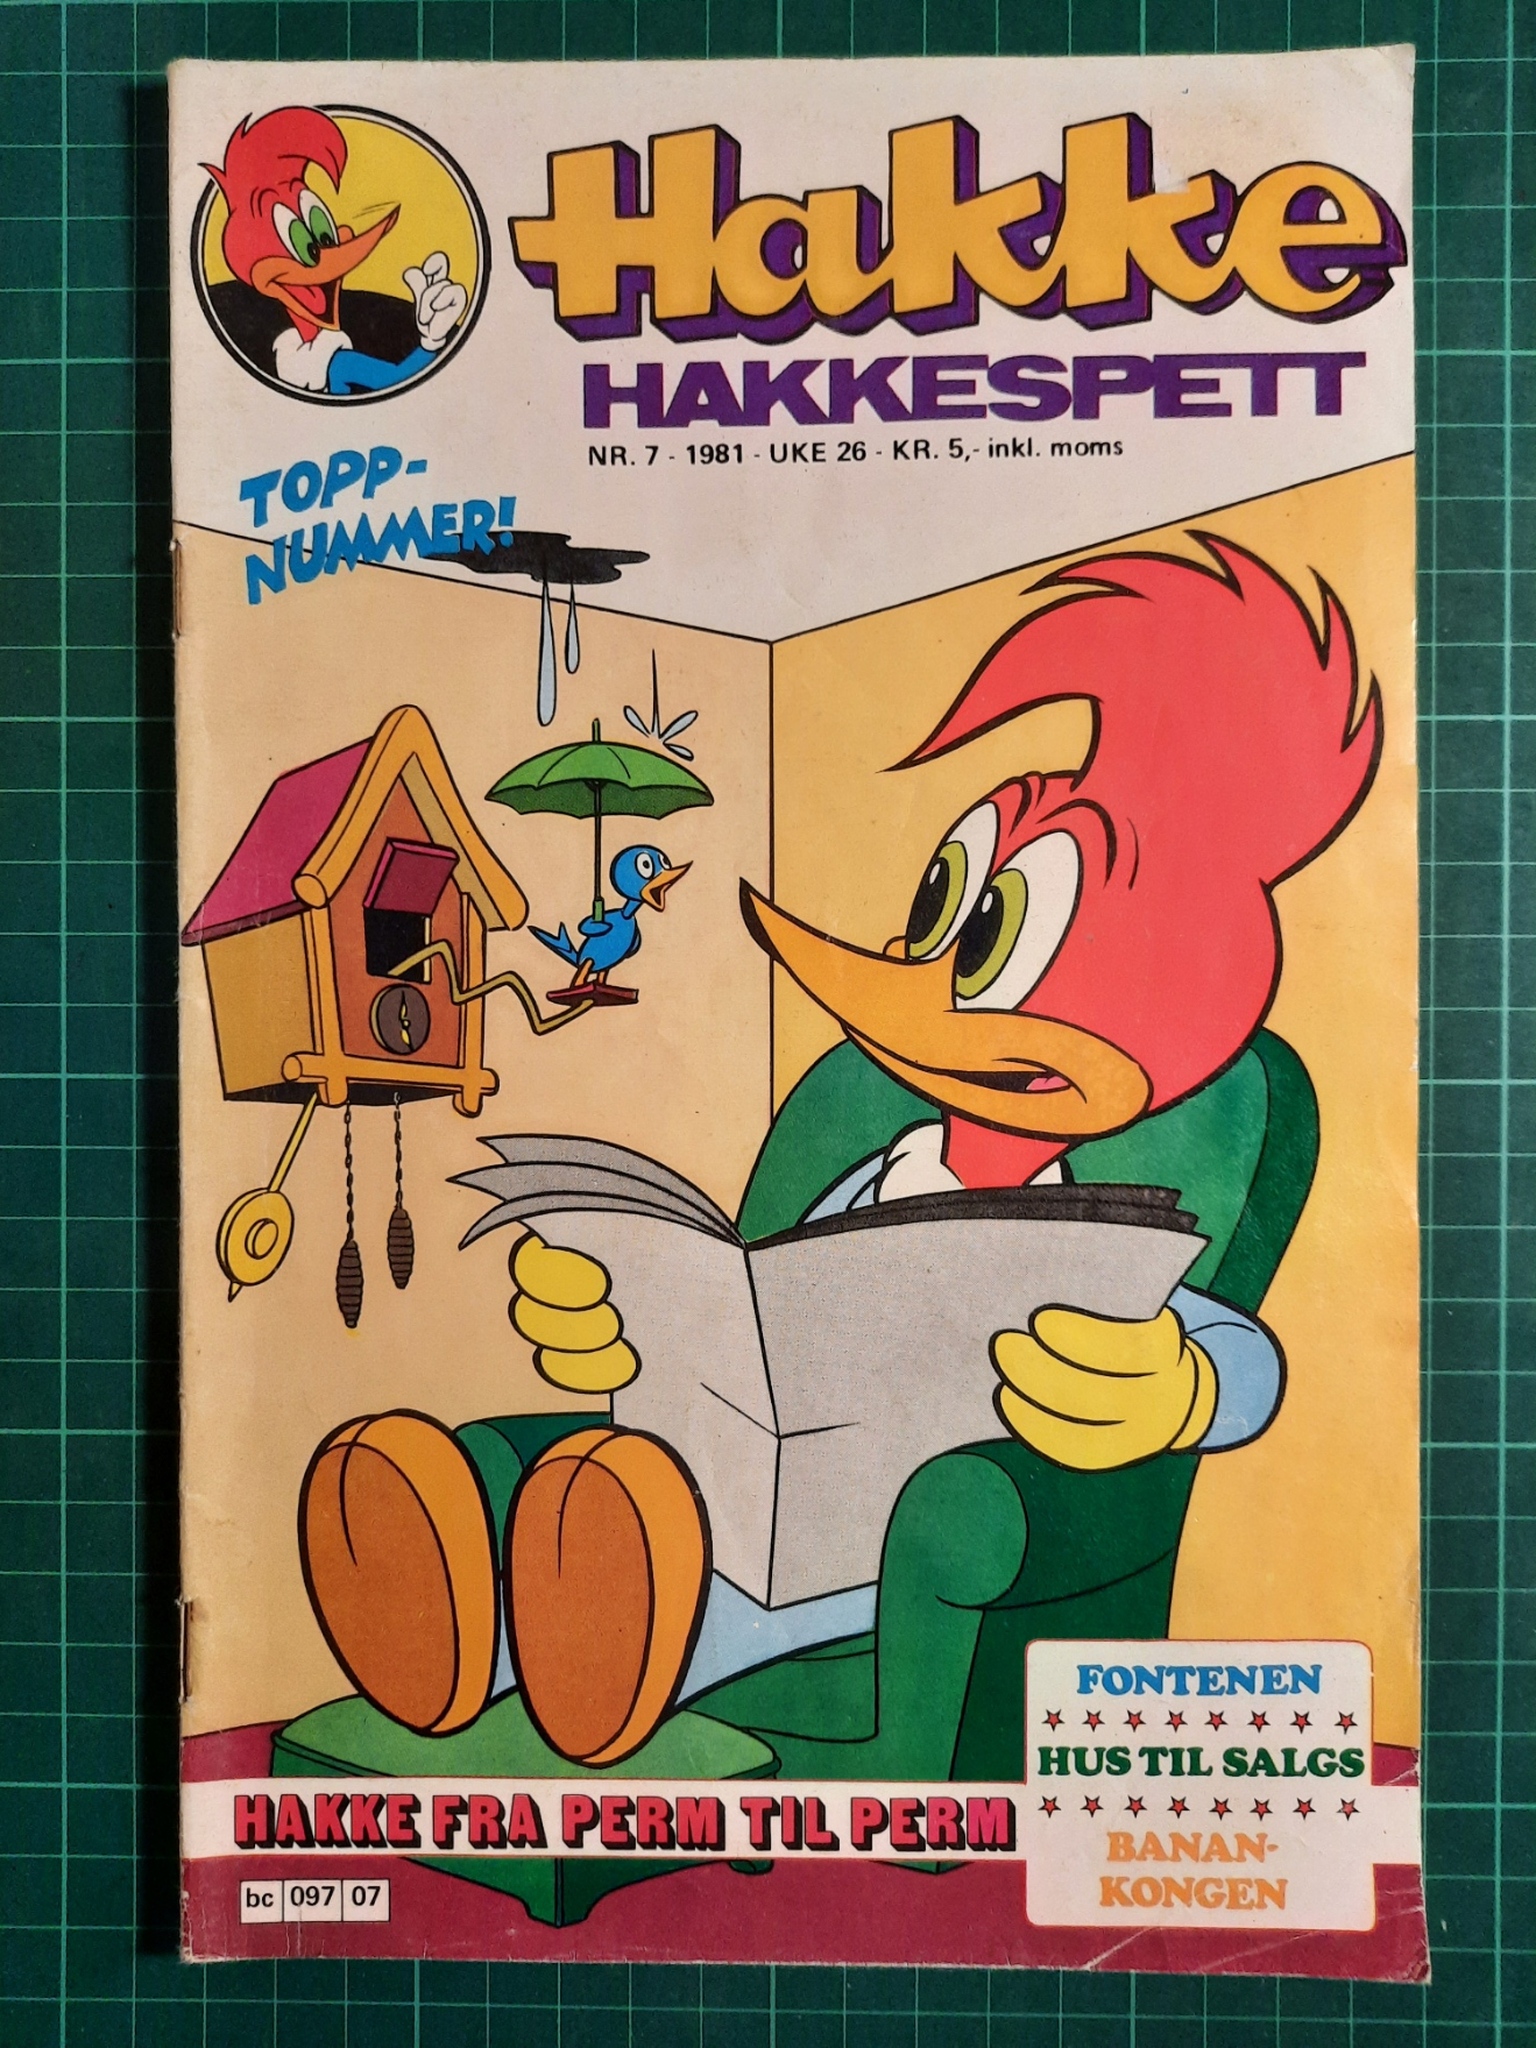 Hakke Hakkespett 1981 - 07